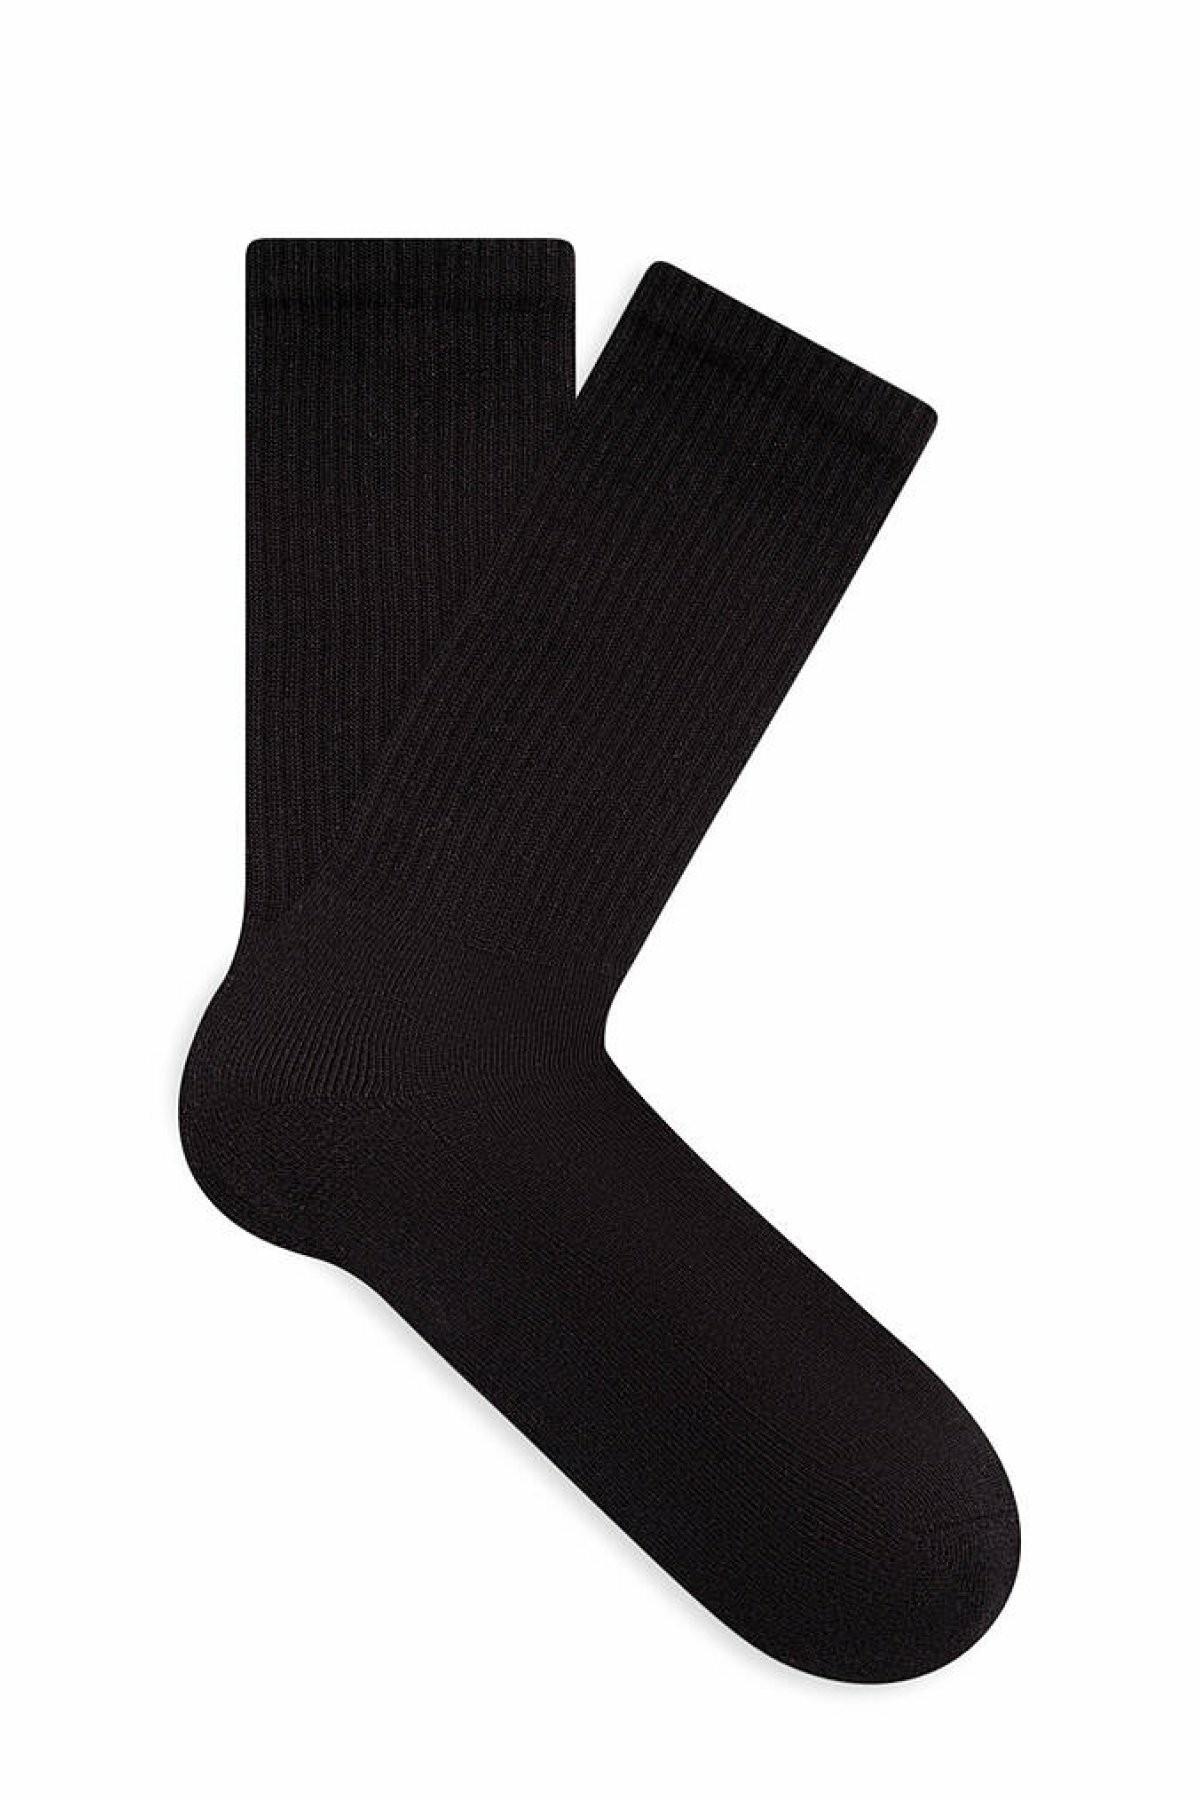 Mavi Siyah Erkek Soket Çorap 0910855-900